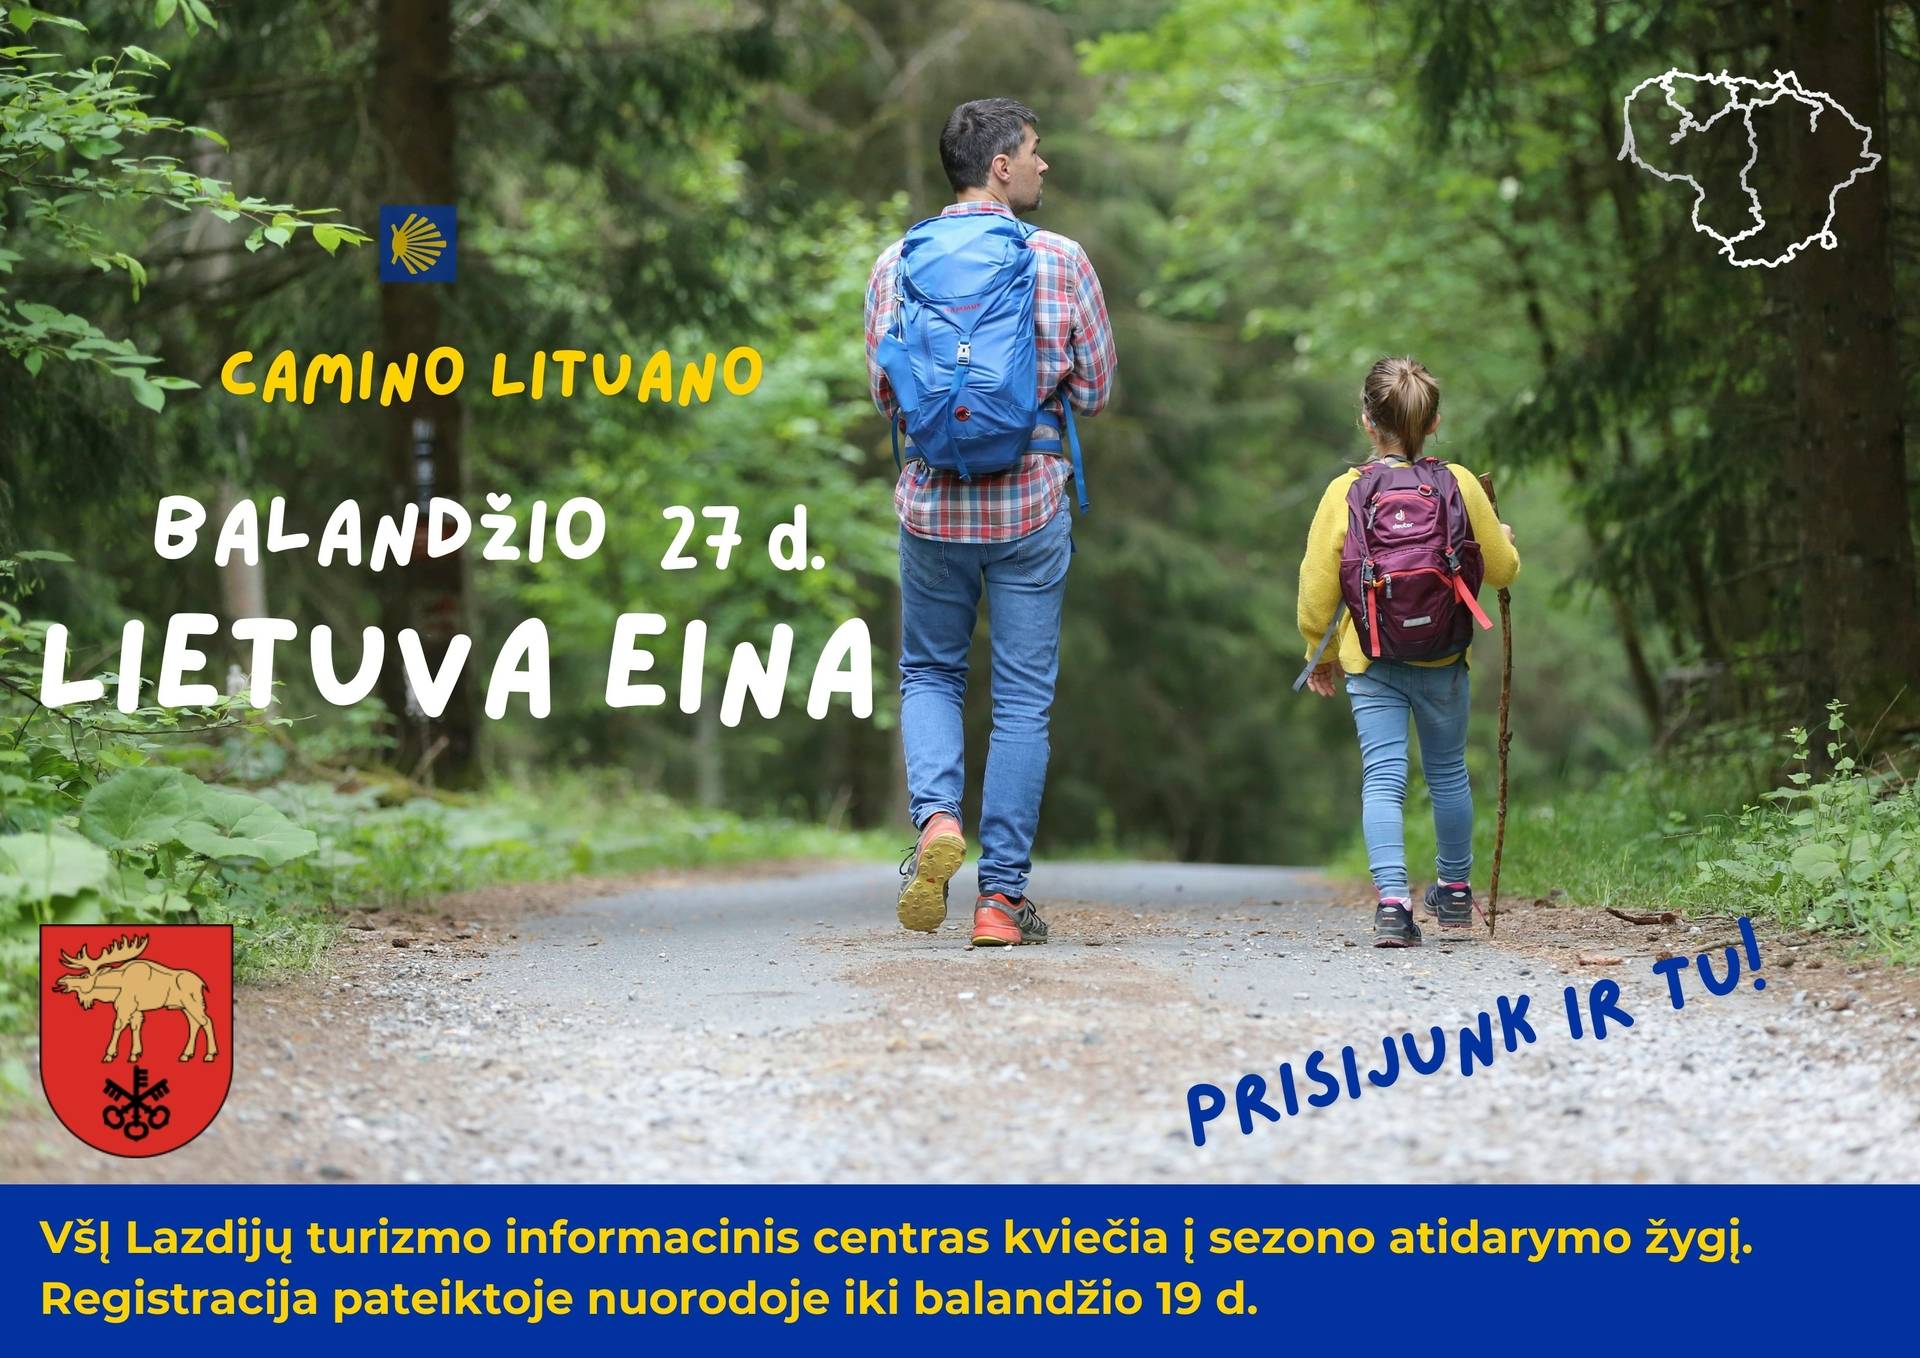 Camino Lituano hike "LITHUANIA IS GOING" route Meteliai-Lazdijai